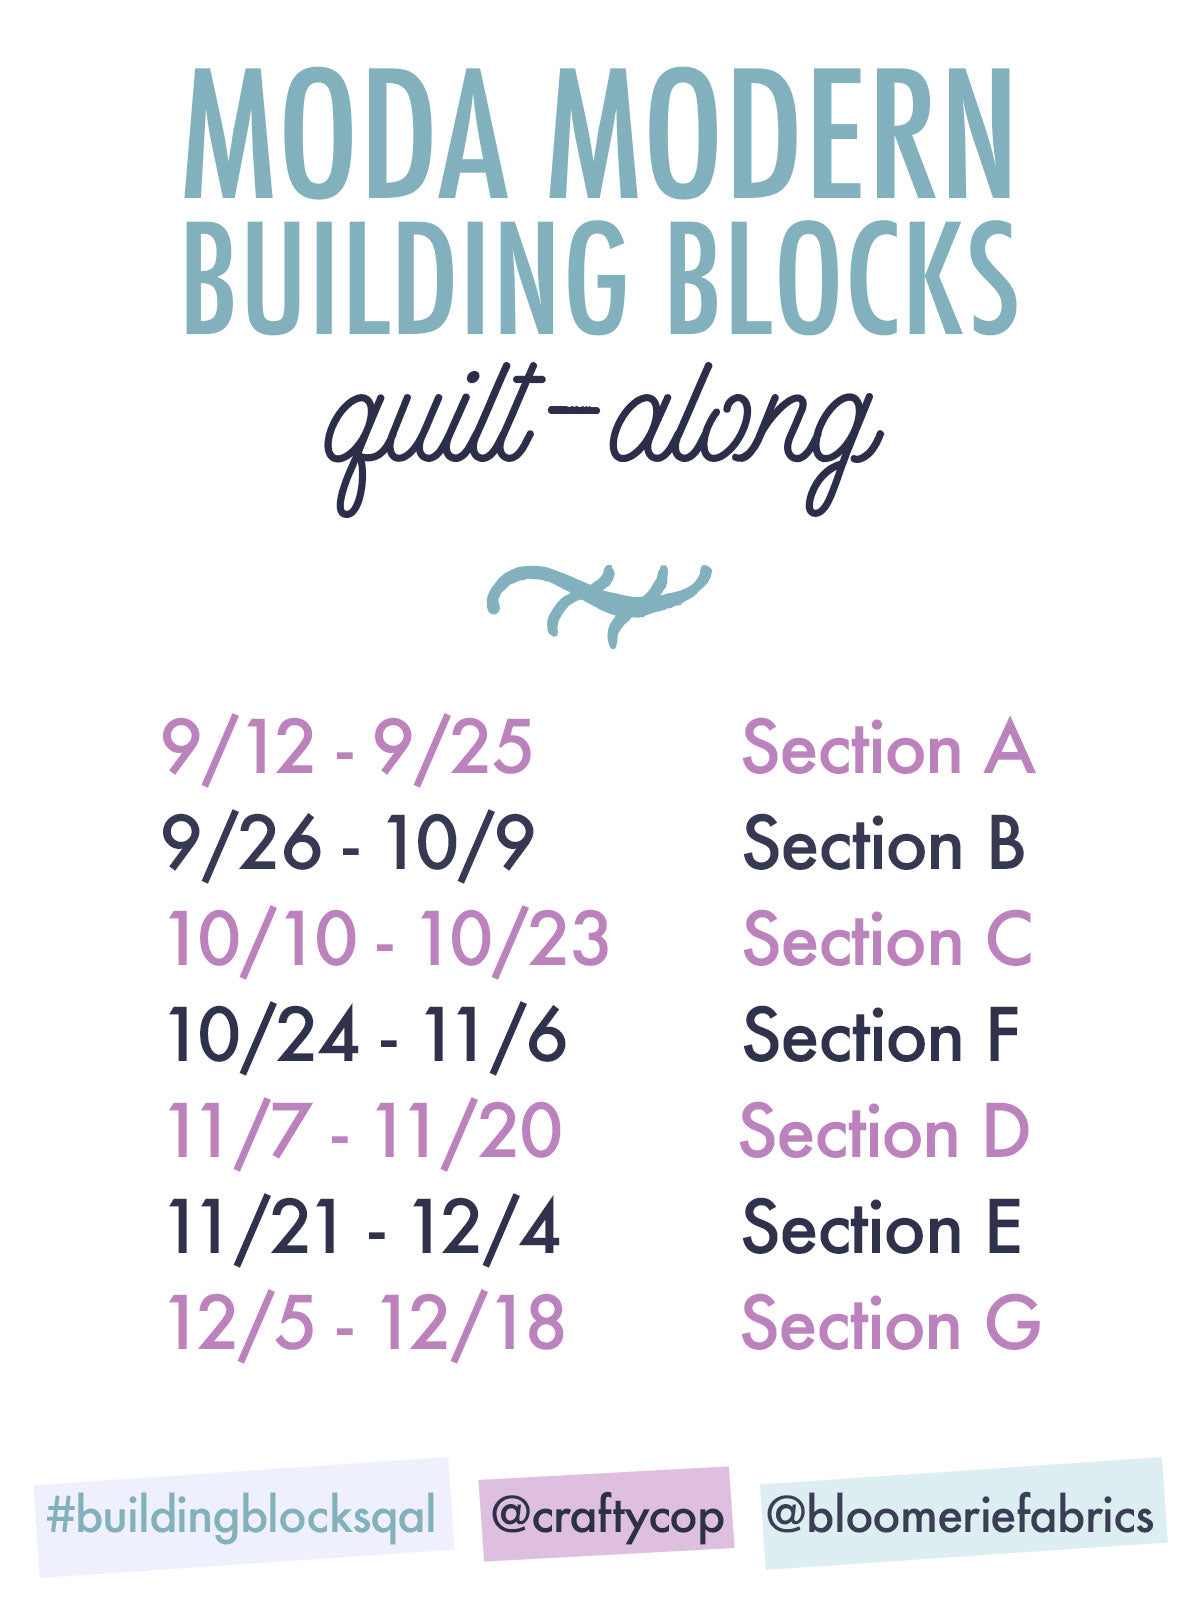 Moda Modern Building Blocks quilt-along schedule